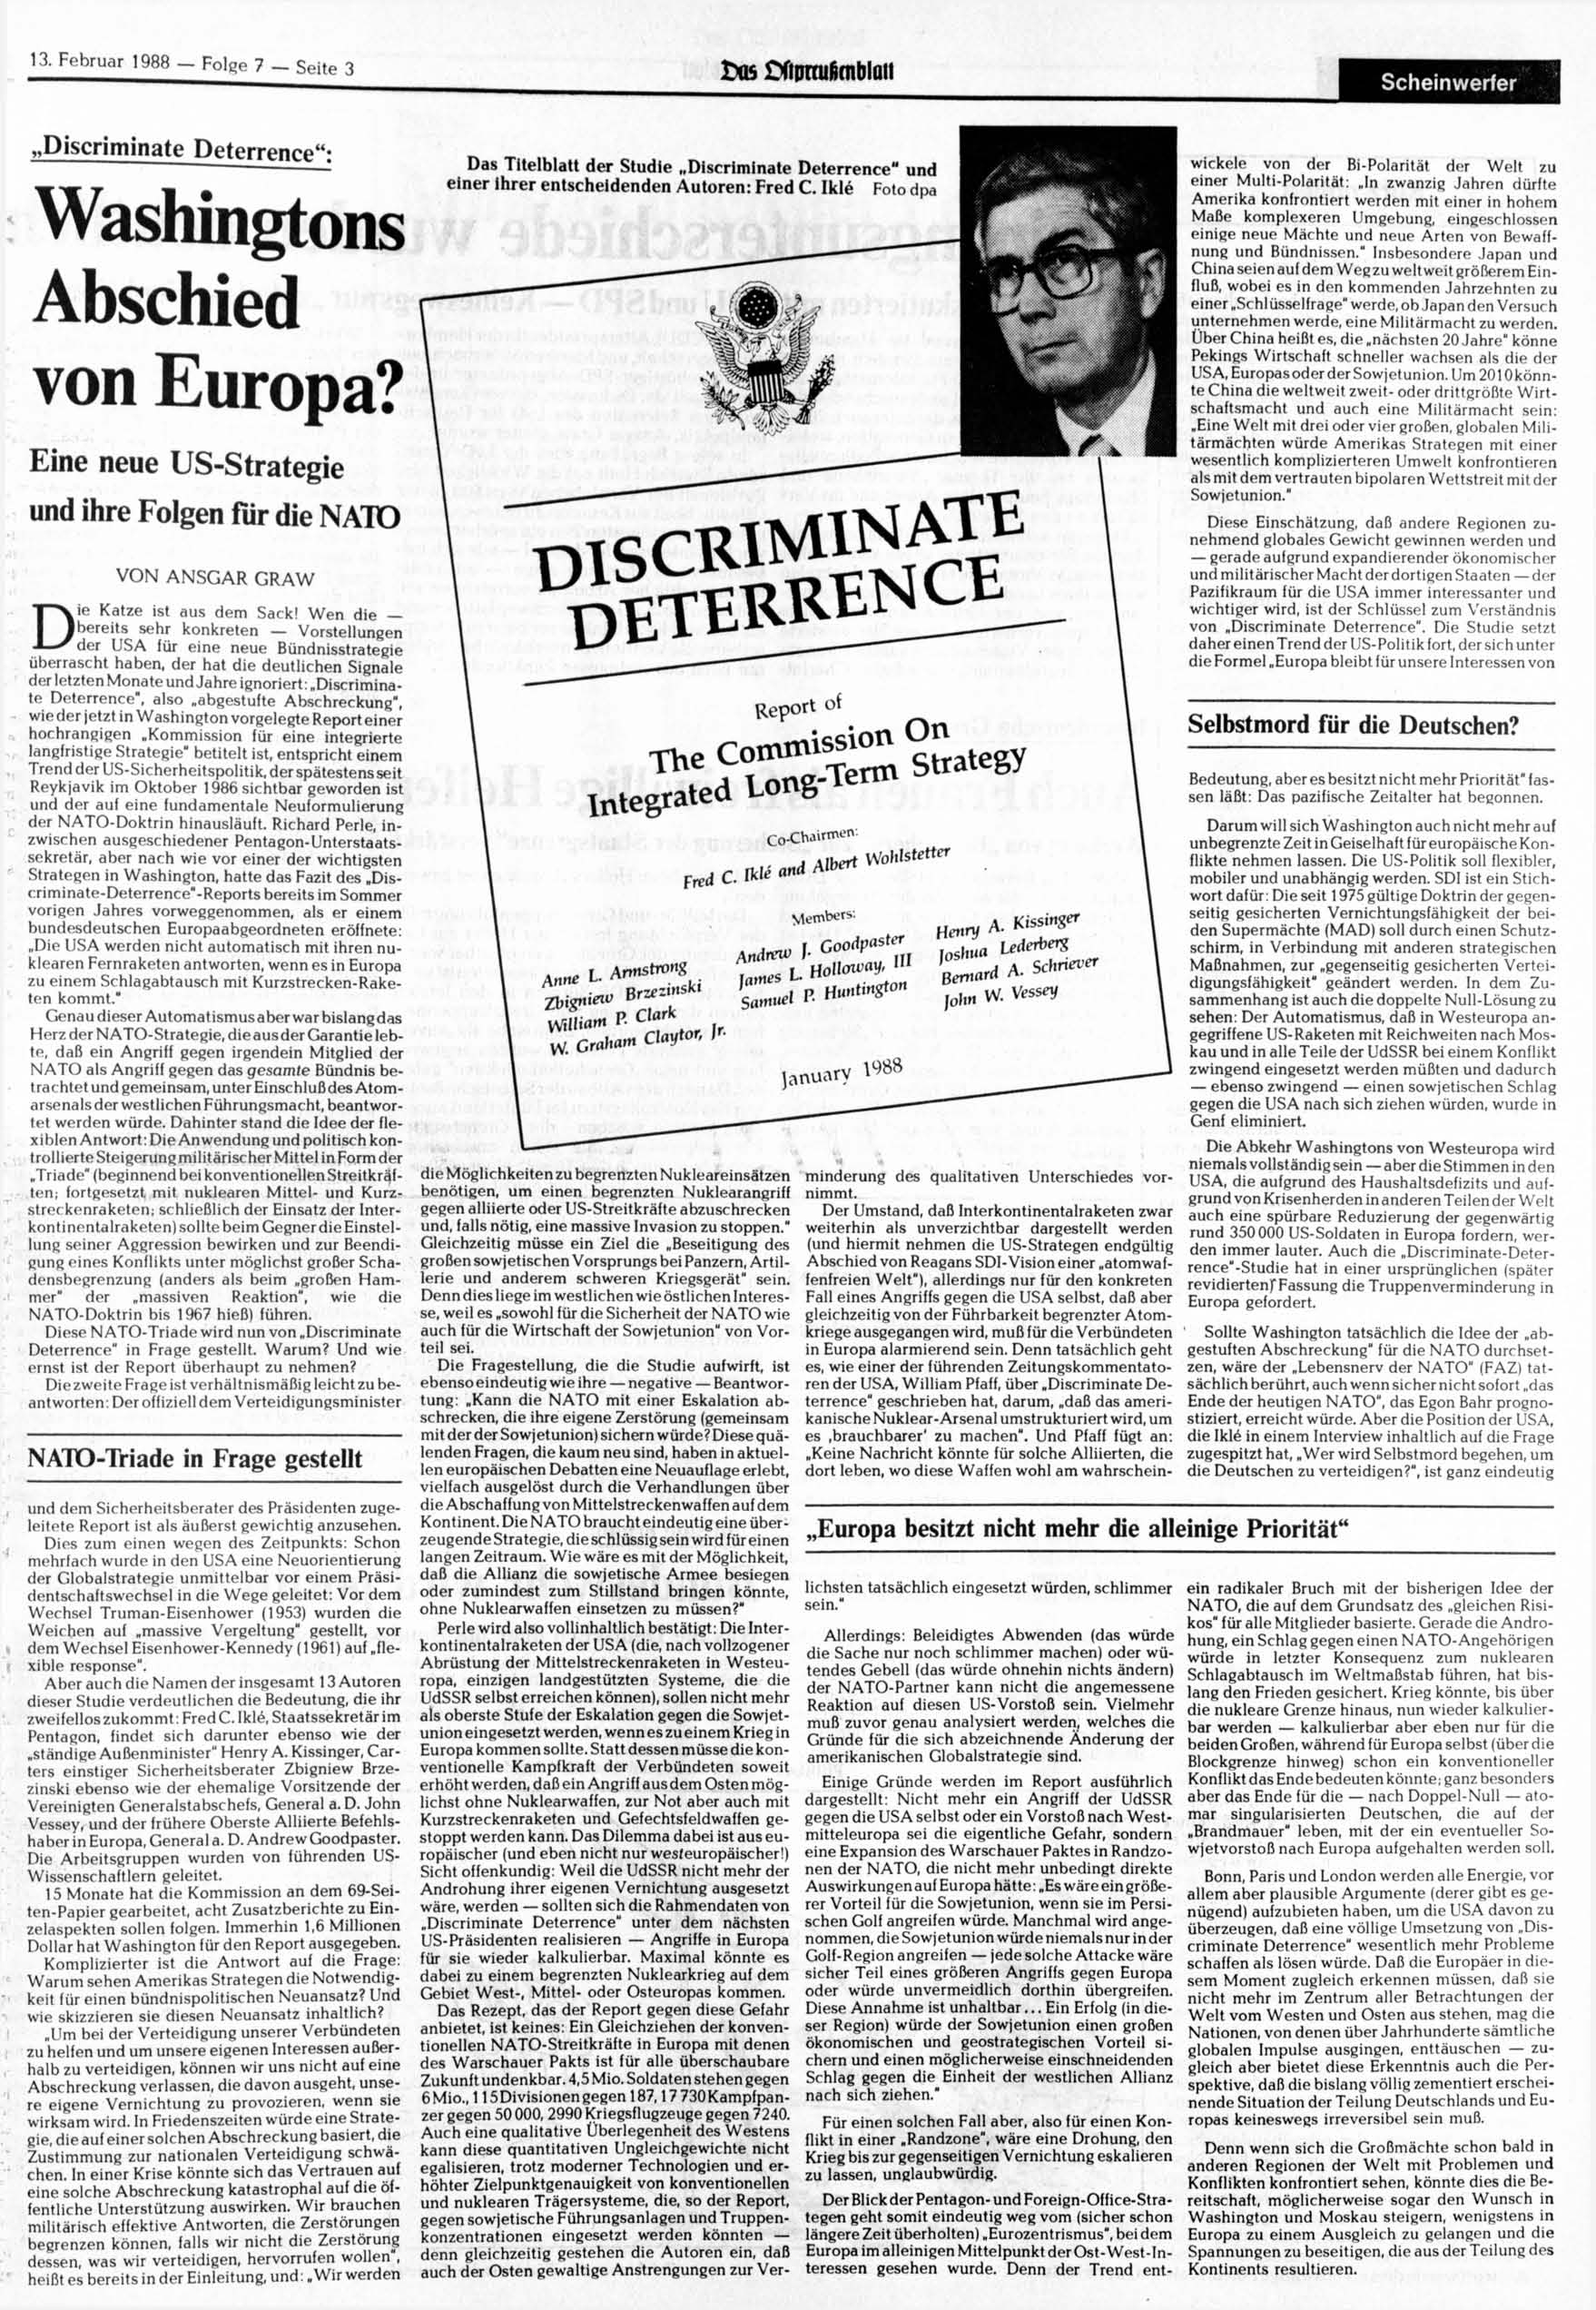 13. Februar 1988 Folge 7 Seite 3 u5 Cftpraifintblatt Scheinwerfer Discriminate Deterrence"? Washingtons Abschied von Europa?